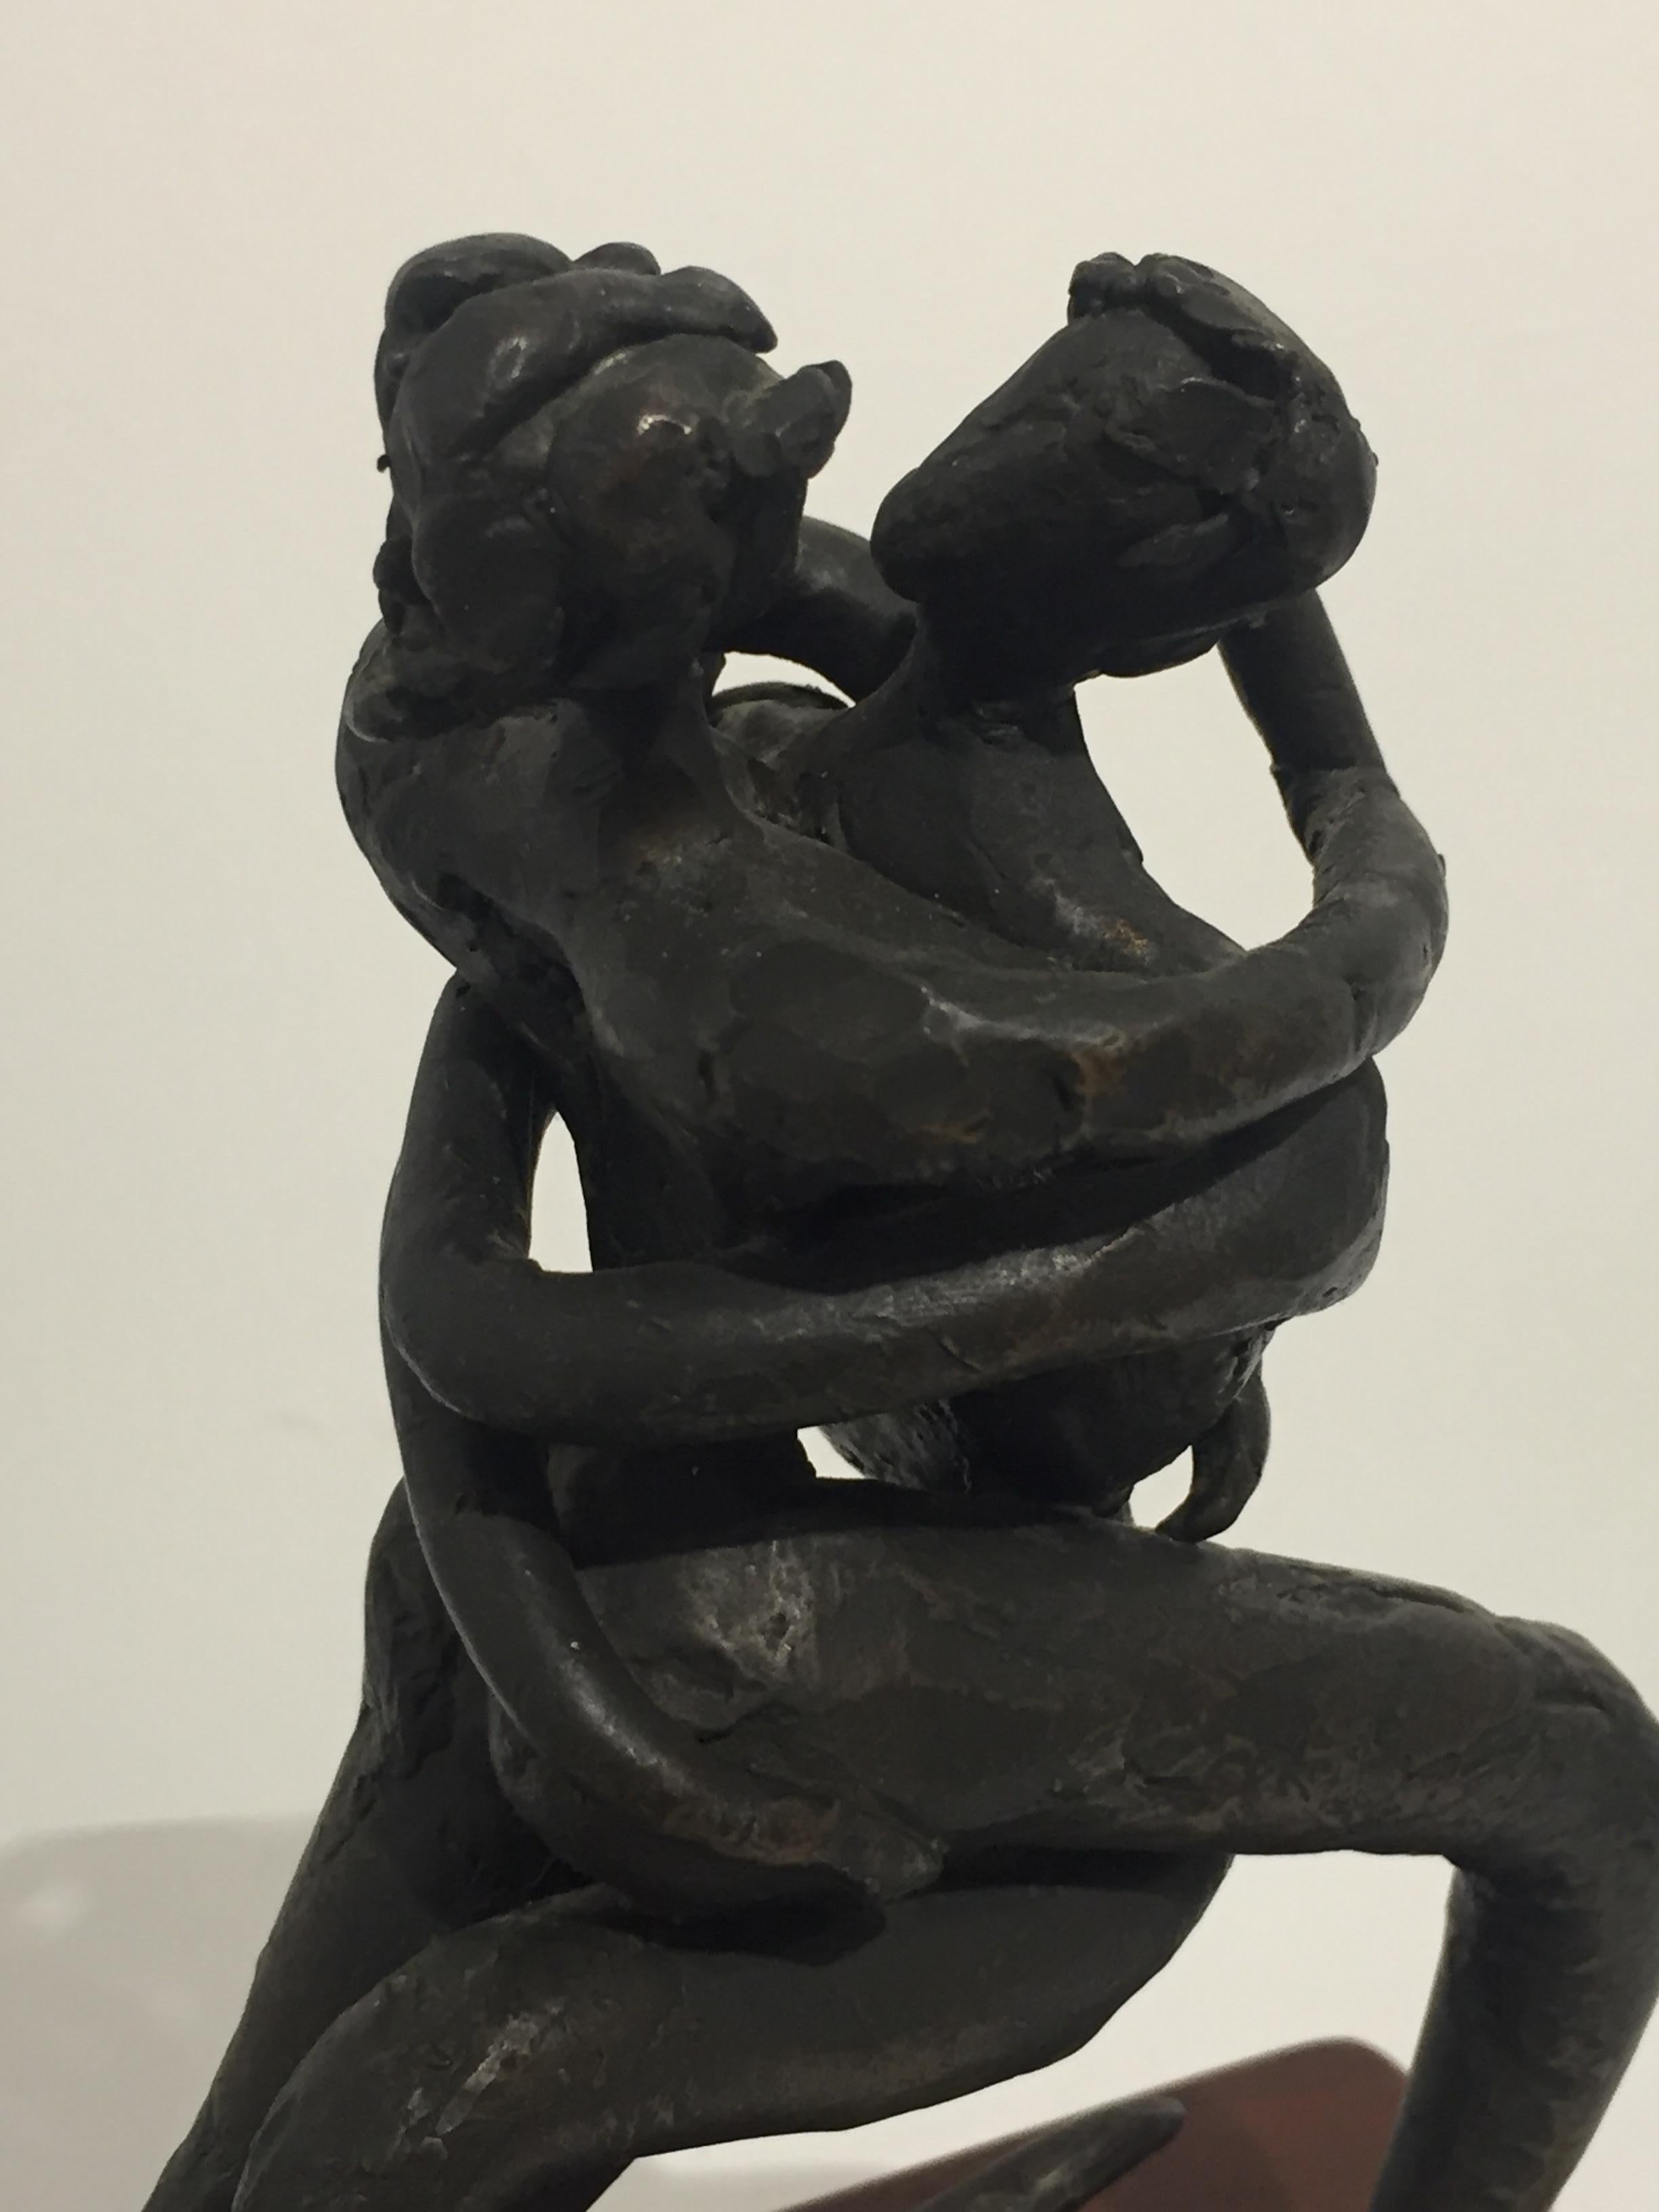 Escultura figurativa de bronce de dos amantes abrazados. La escultura tiene una textura tosca, una pátina oscura y una base de madera.

Medidas
Escultura: 7,5